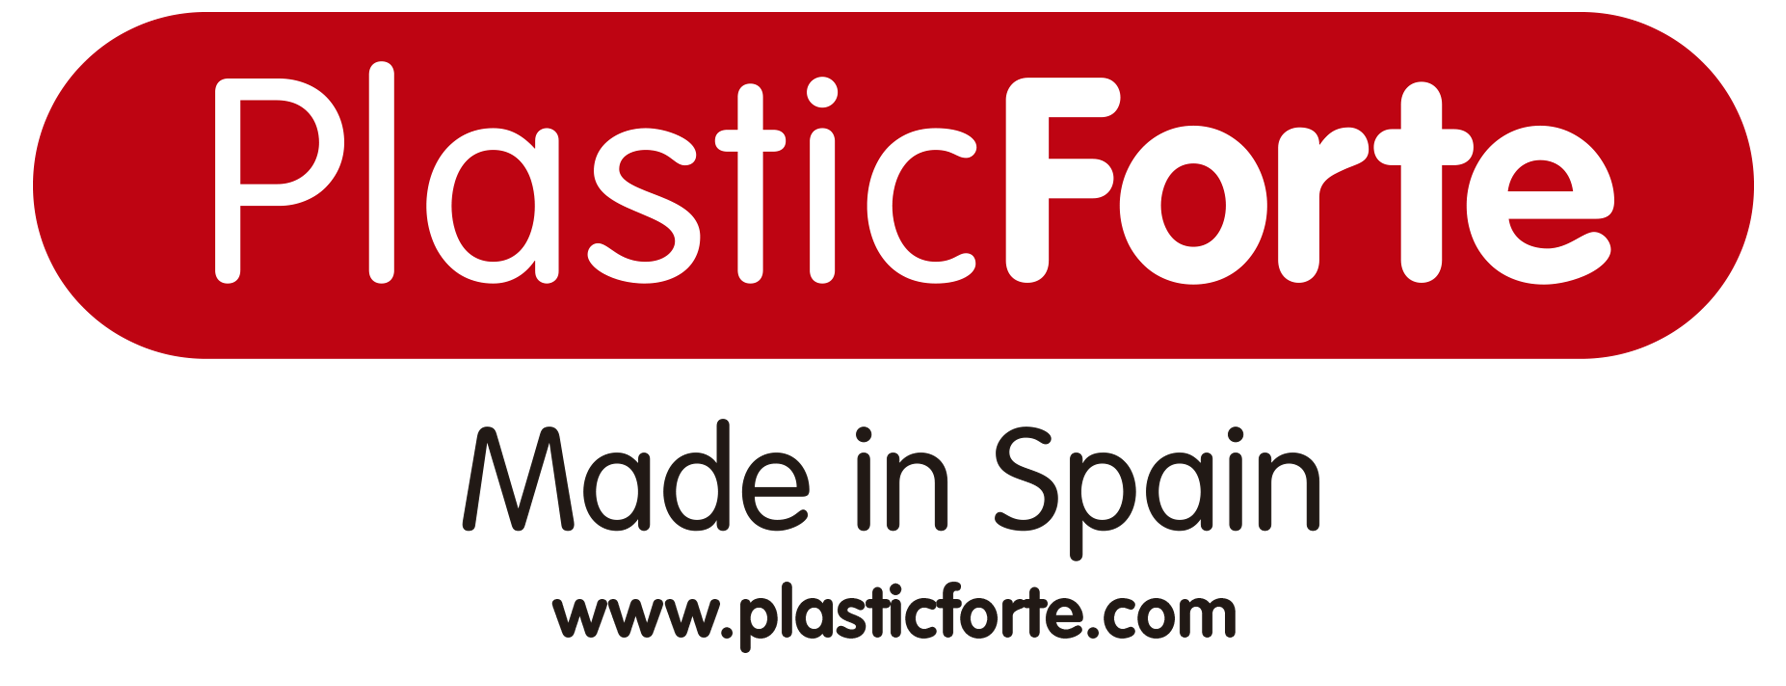 PlasticForte